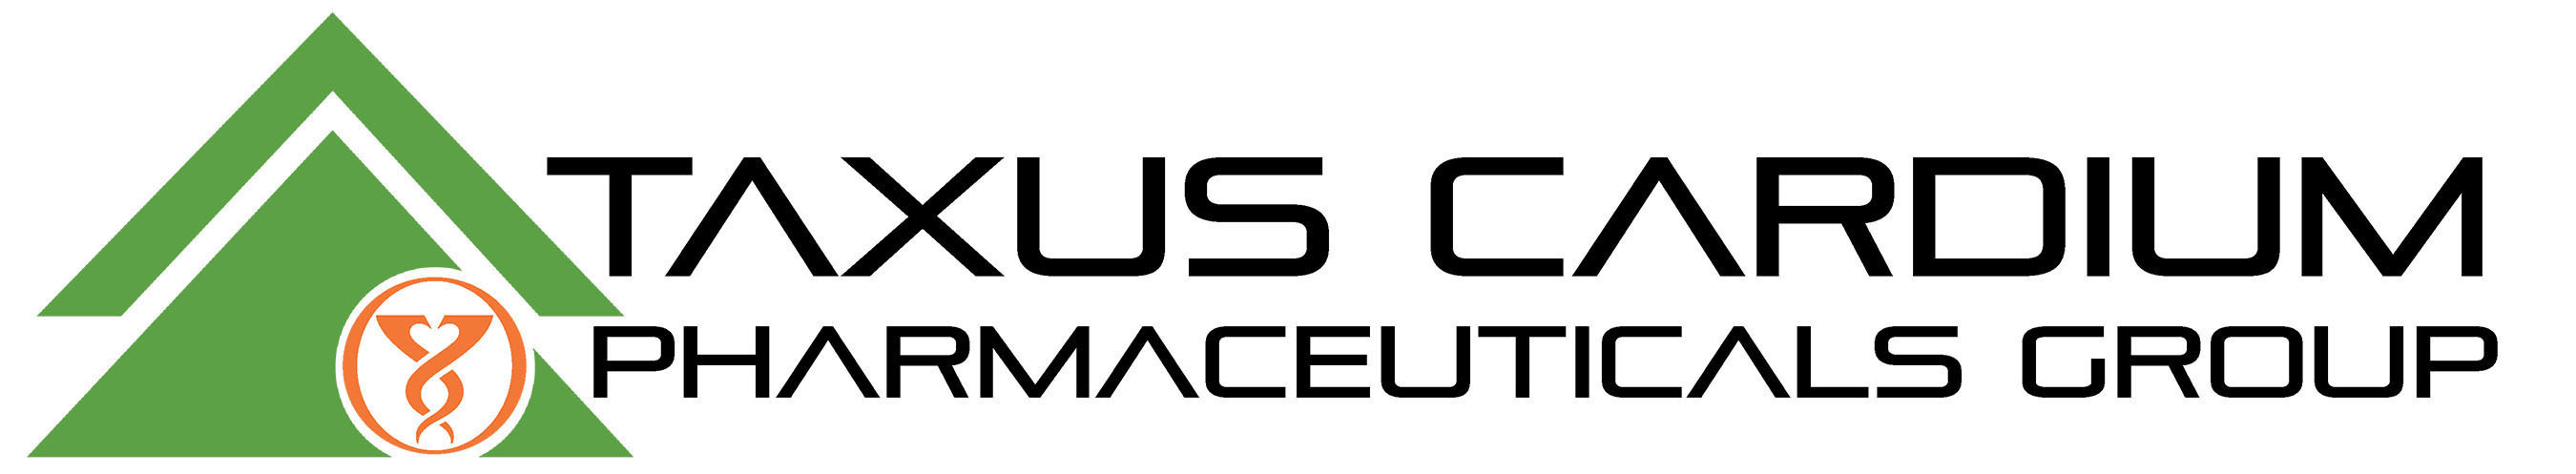 Taxus Cardium Pharmaceuticals Group Logo. (PRNewsFoto/Taxus Cardium Pharmaceuticals Group Inc.) (PRNewsFoto/TAXUS CARDIUM PHARMACEUTICALS)